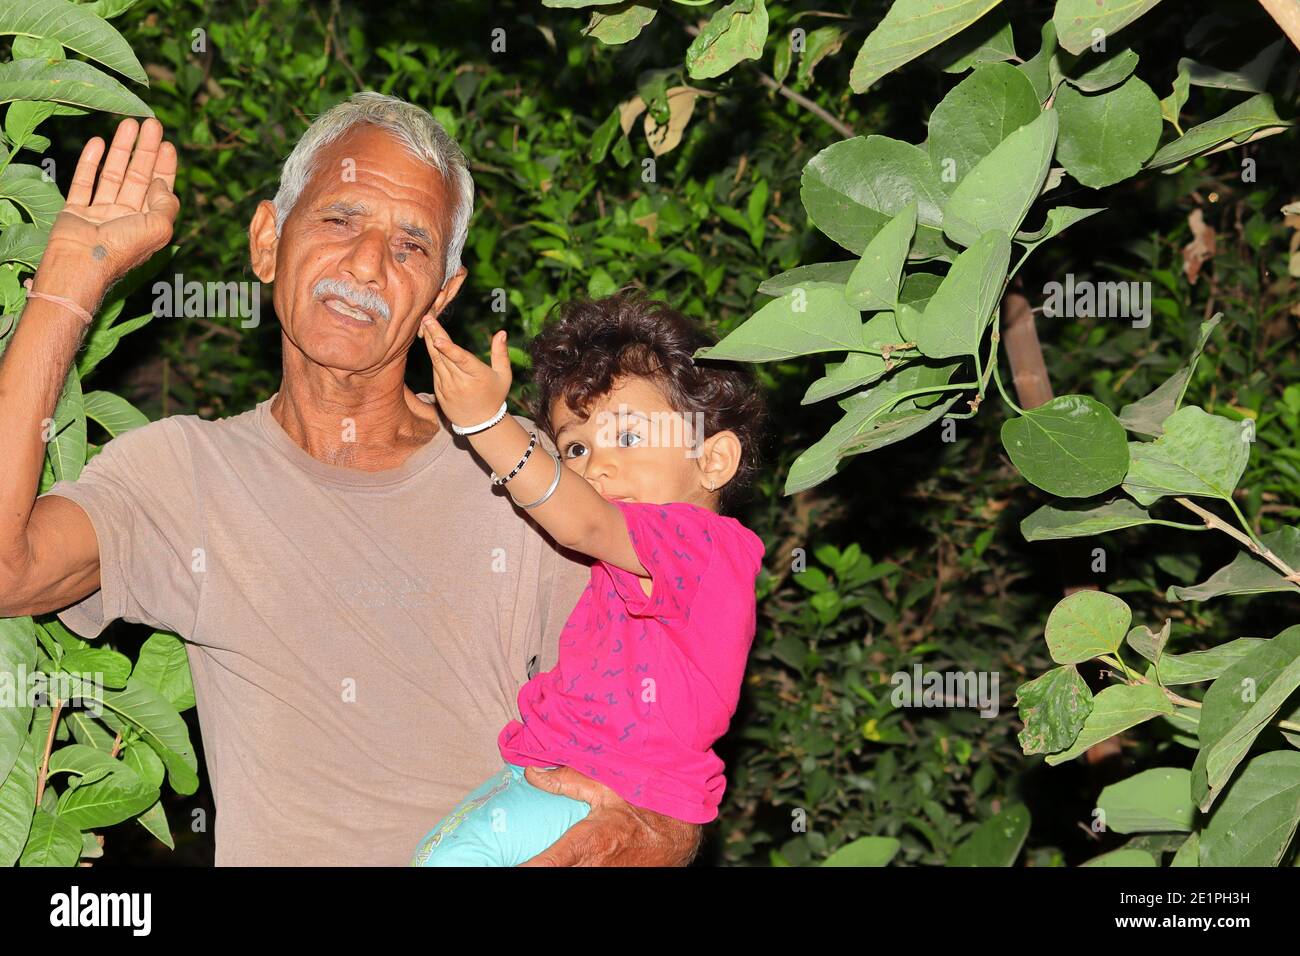 Ein schönes indisches Kind und Großvater lächeln im Garten und schauen auf die wachsende Schönheit der Bäume, indien Stockfoto